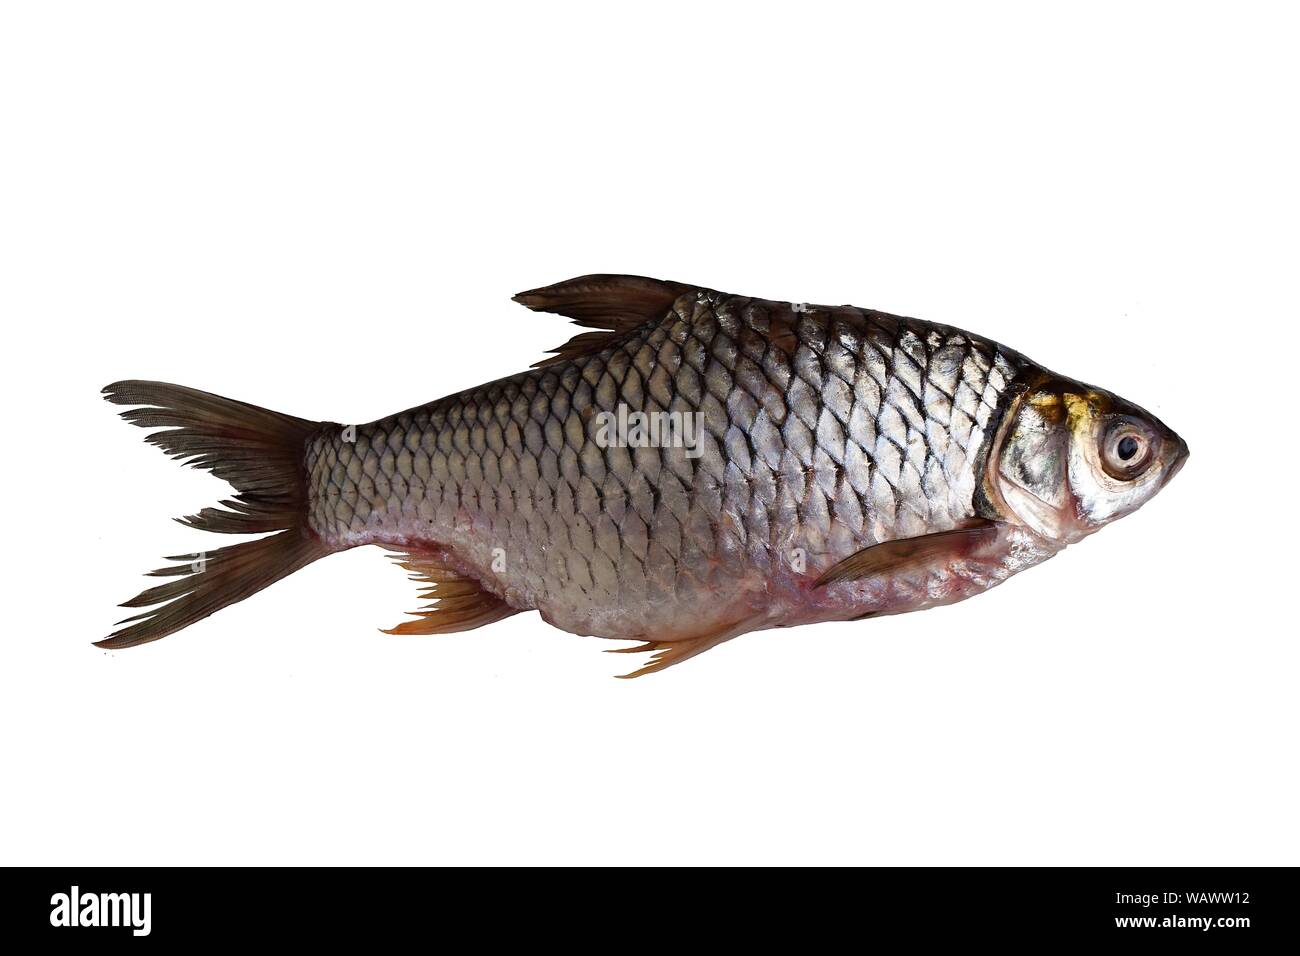 Java barb, pesce isolato su sfondo bianco, aquacultur importanti specie di acqua dolce in Thailandia Foto Stock